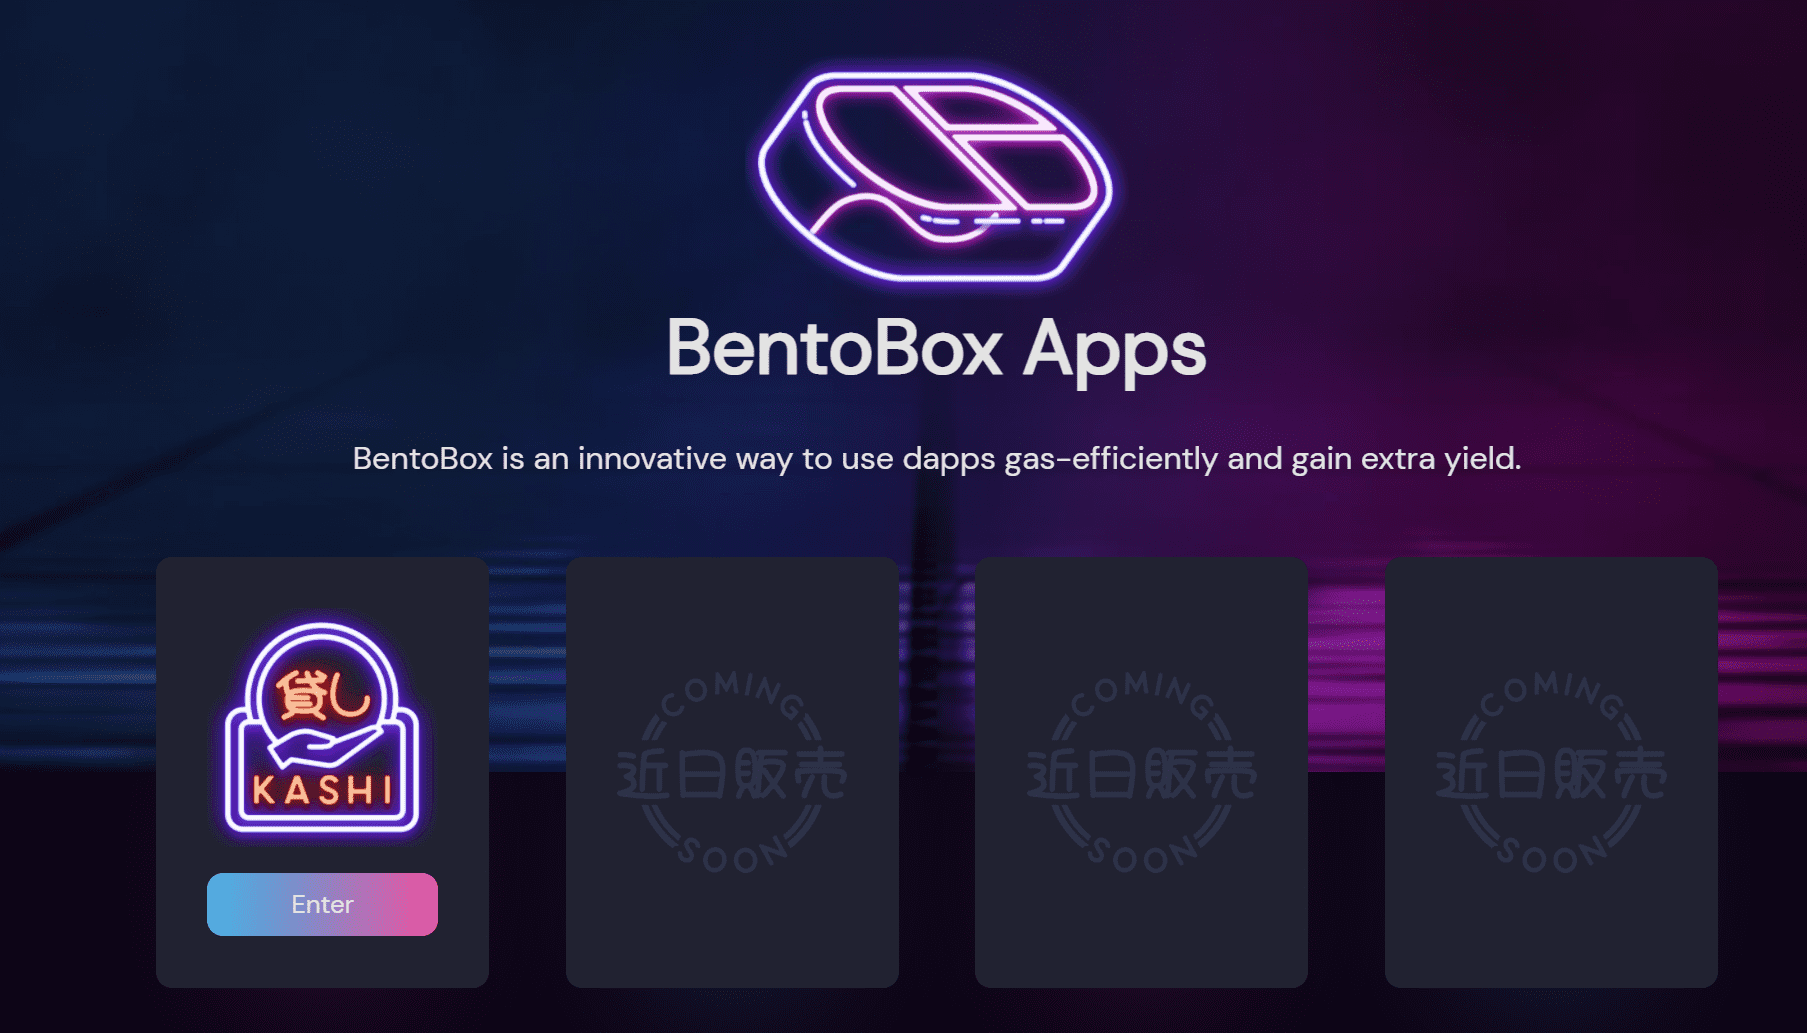 神奇的便当盒 BentoBox：节省 Gas、被动躺赚、开发者友好的开放平台